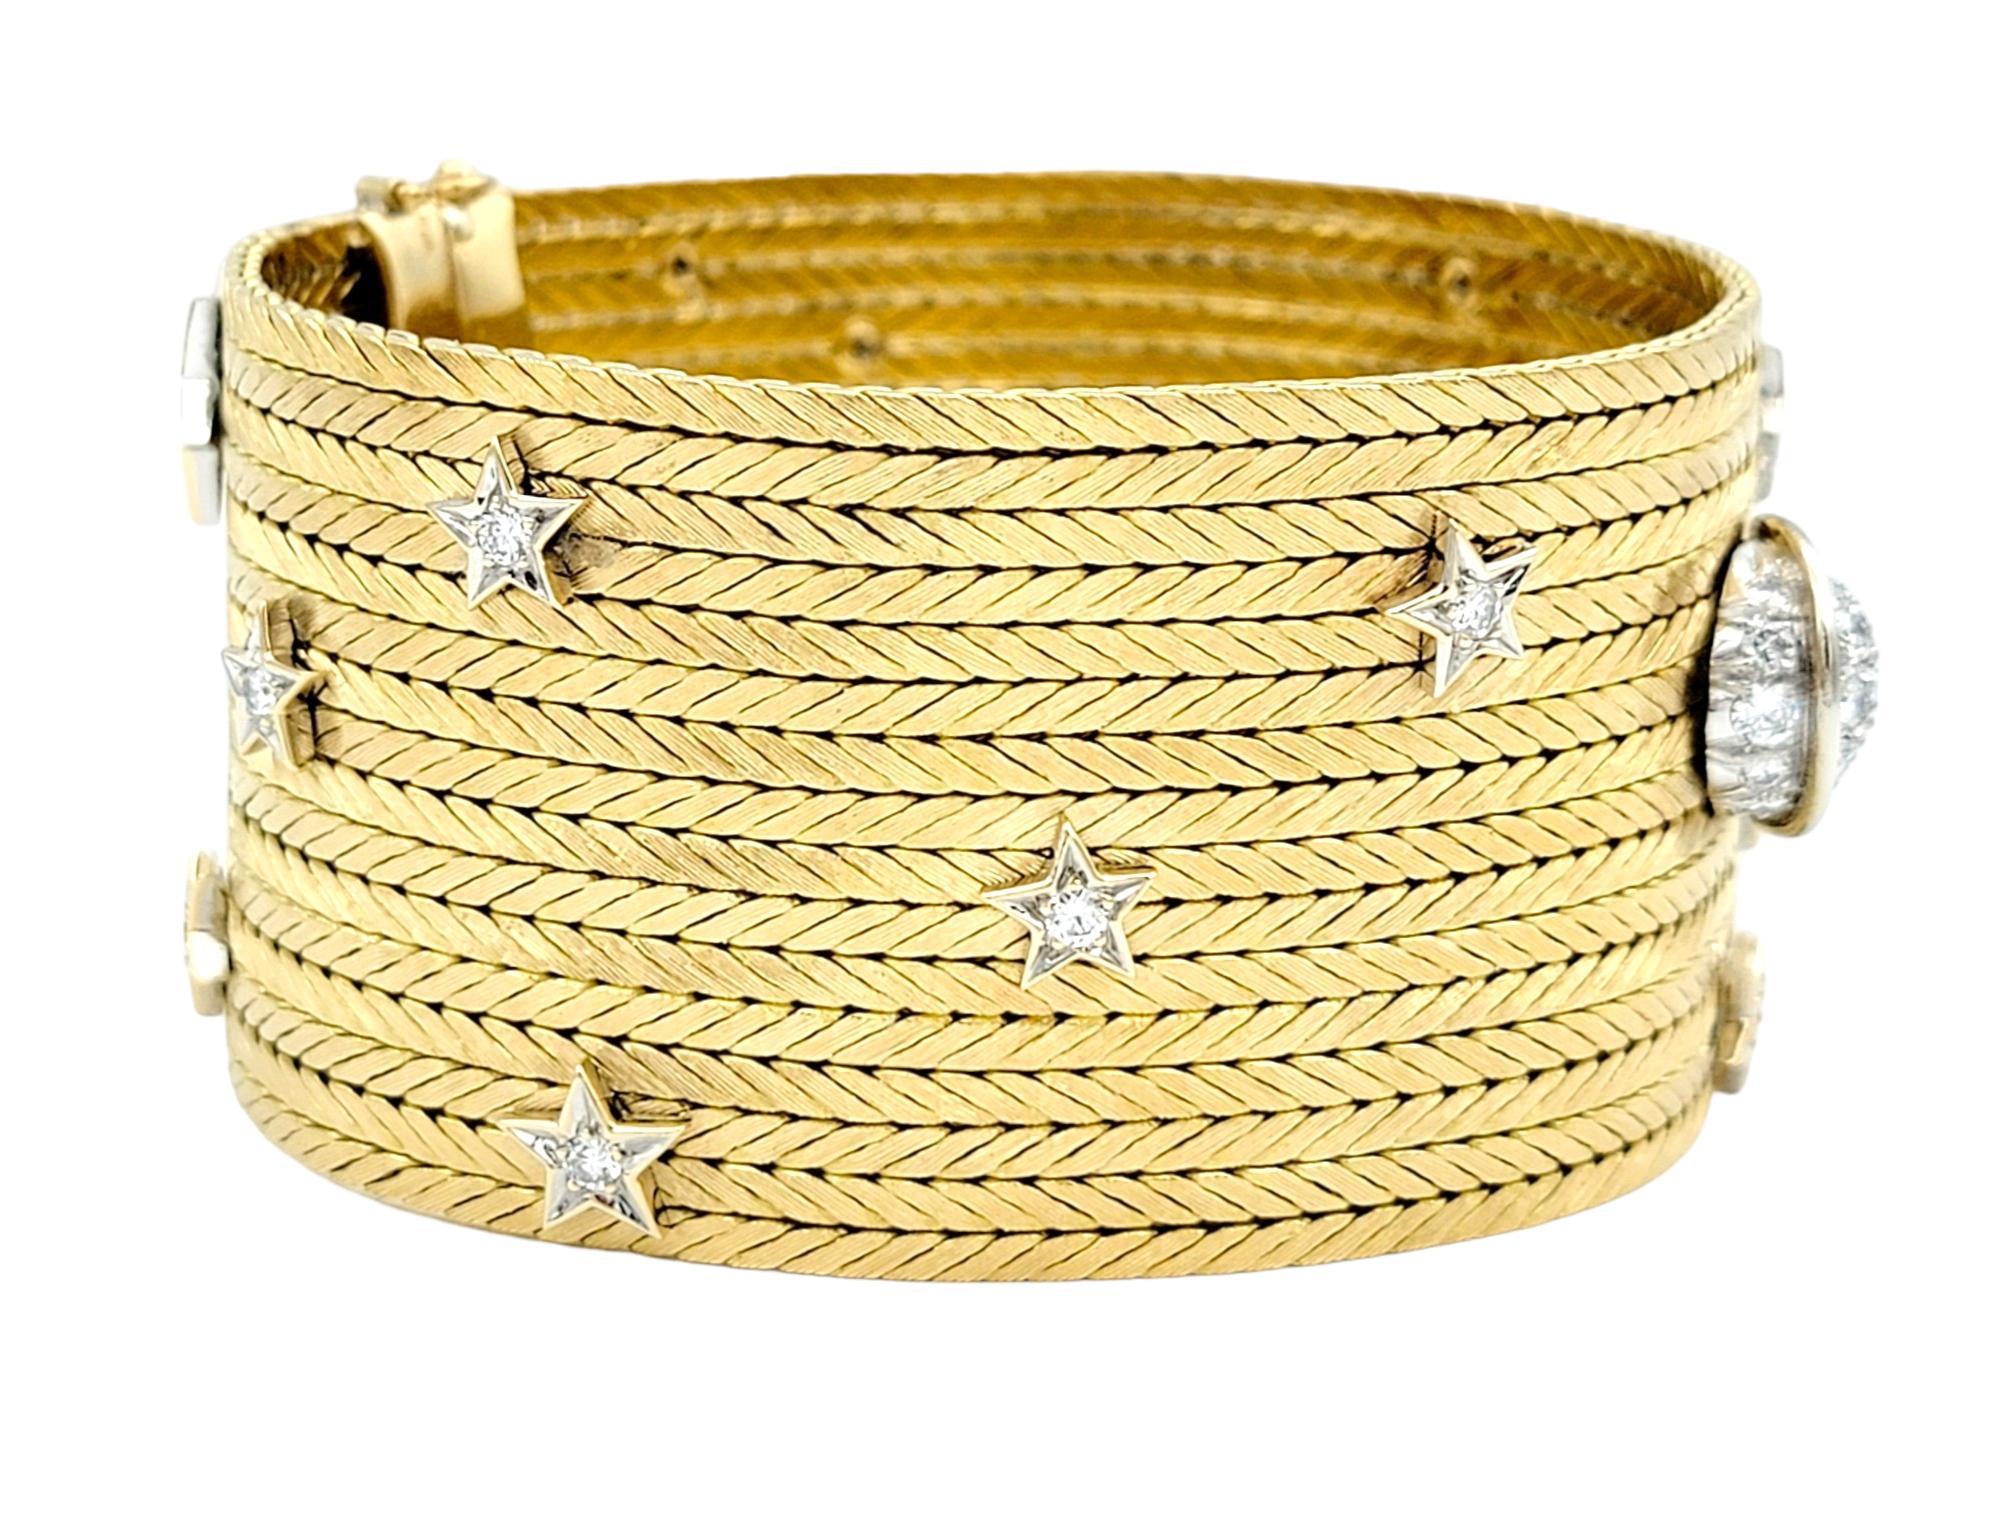 Dieses exquisite, breite Manschettenarmband aus luxuriösem 18-karätigem Gelbgold ist ein Kunstwerk. Das Armband rühmt sich mit einem komplizierten dimensionalen Diamant-Mond- und Stern-Cluster-Design, das Ihrem Ensemble einen Hauch von himmlischer